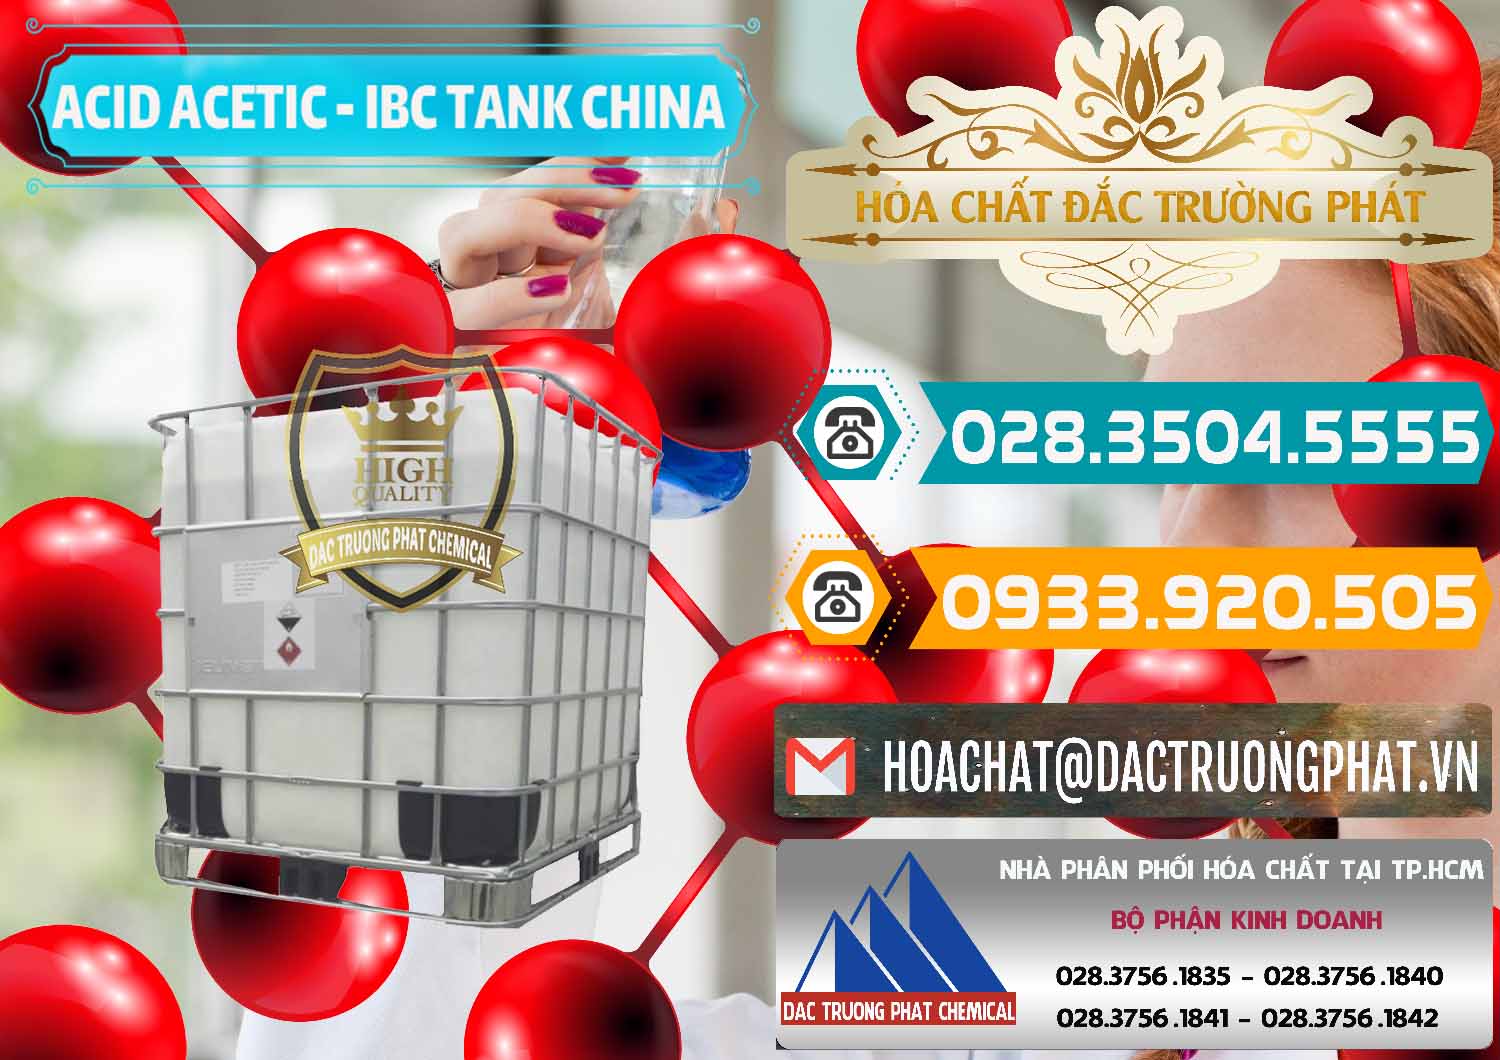 Cty chuyên cung cấp - bán Acetic Acid – Axit Acetic Tank Bồn IBC Trung Quốc China - 0443 - Công ty phân phối & bán hóa chất tại TP.HCM - congtyhoachat.vn